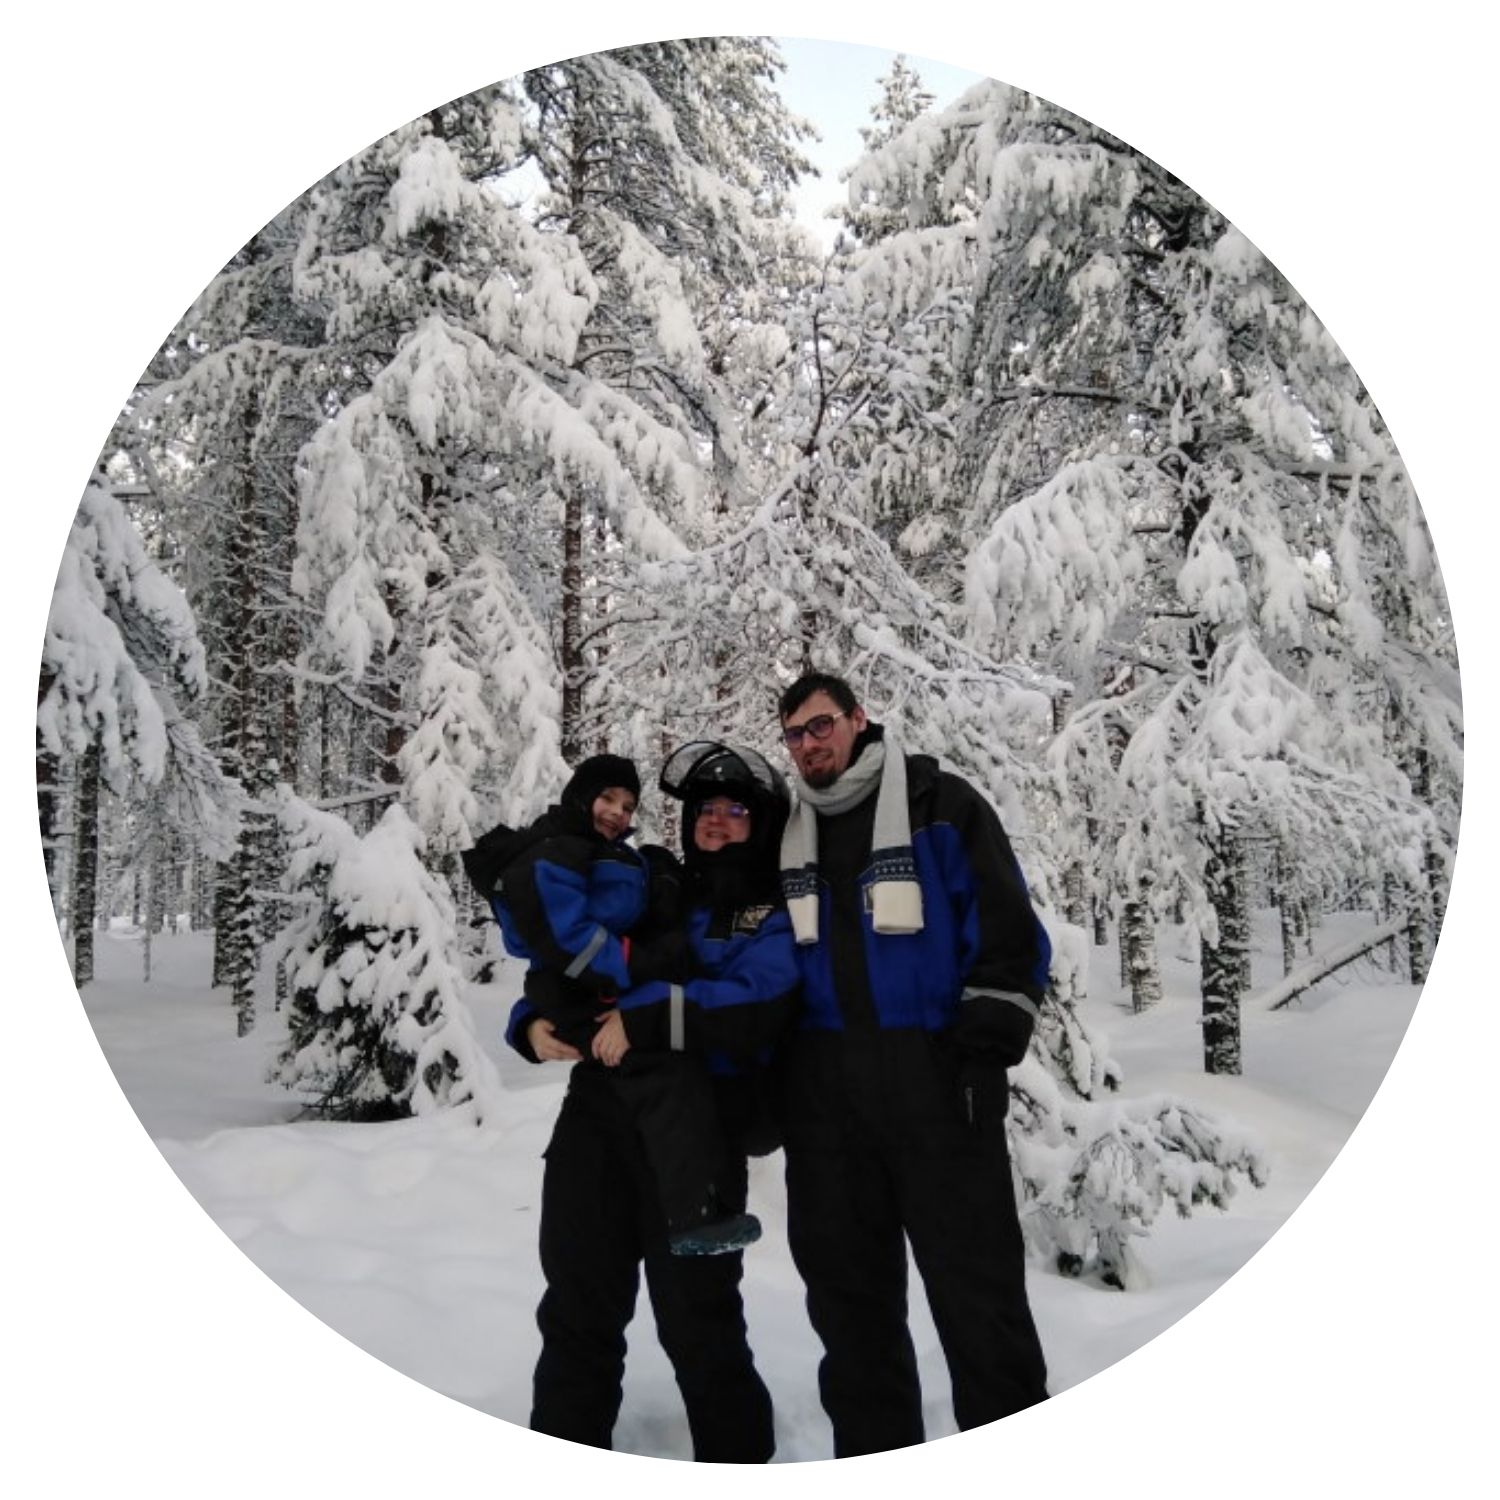 Une famille composée d'un petit garçon et ses parents prend une photo dans une magnifique forêt recouverte de neige en Finlande, capturant un moment de bonheur en pleine nature hivernale.